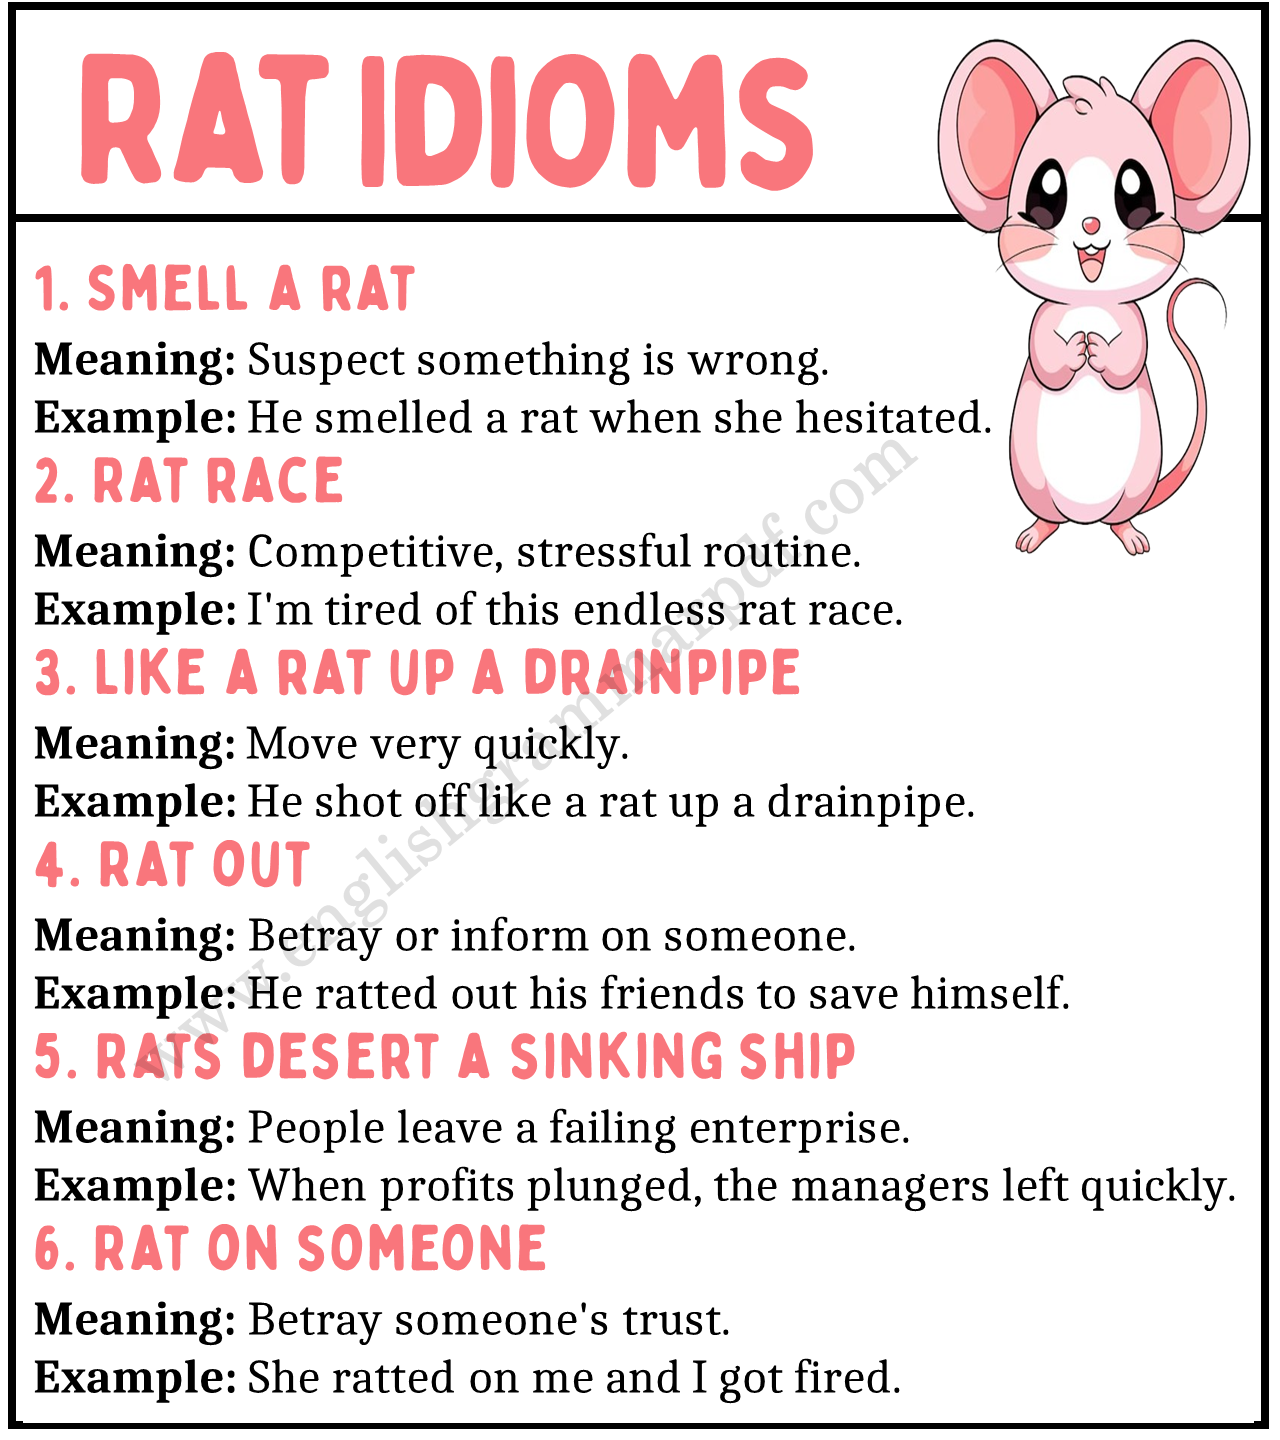 Rat Idioms